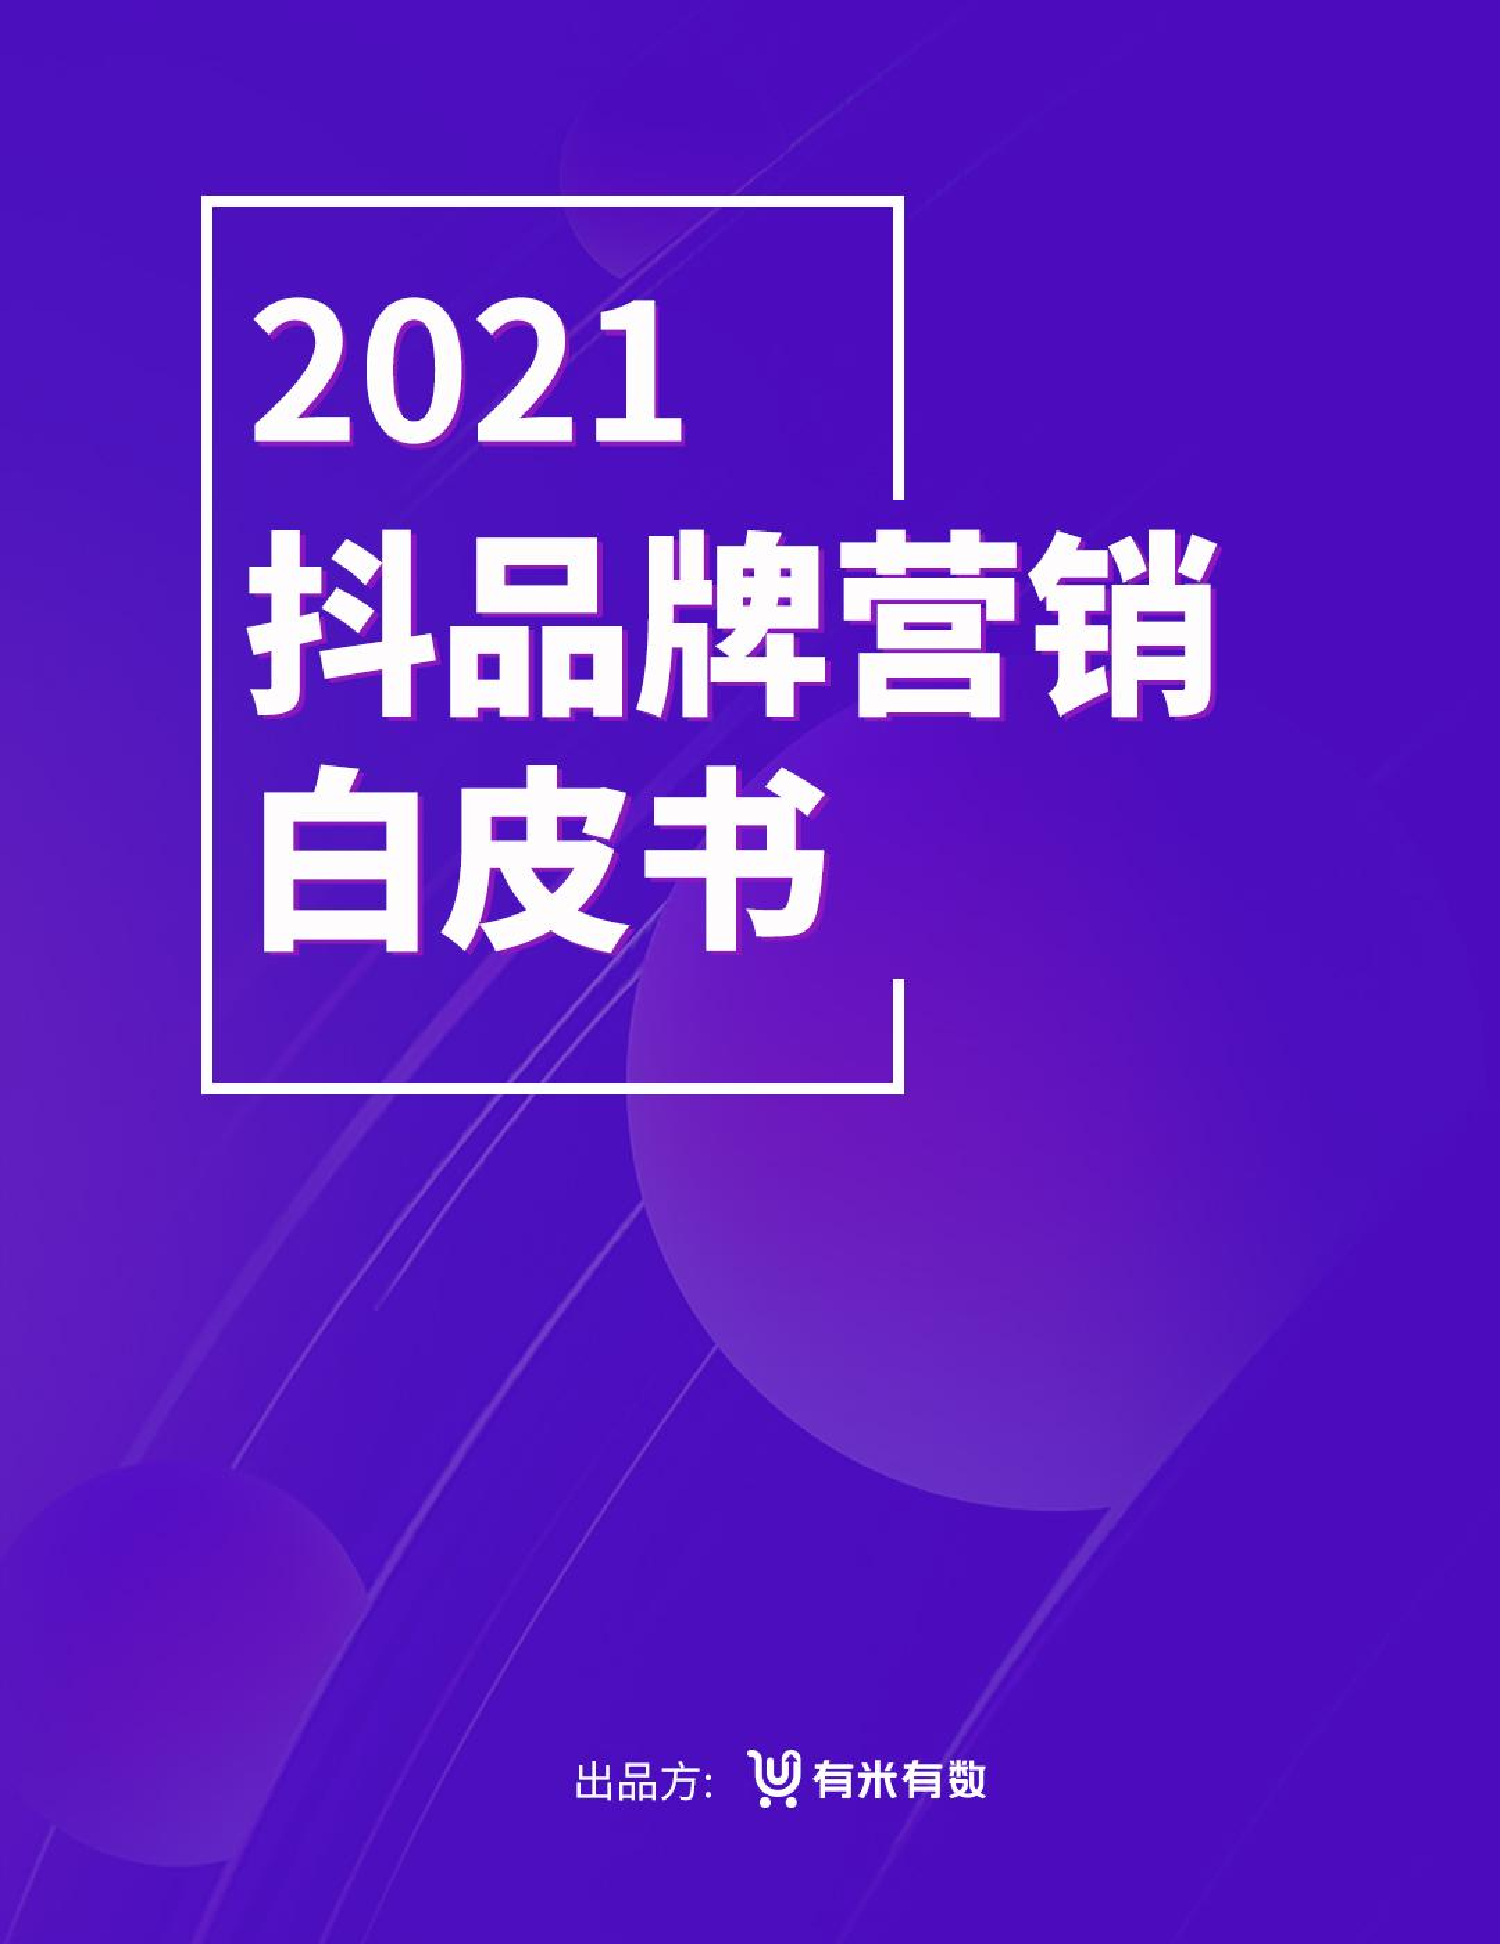 2021年抖品牌营销白皮书2021年抖品牌营销白皮书_1.png